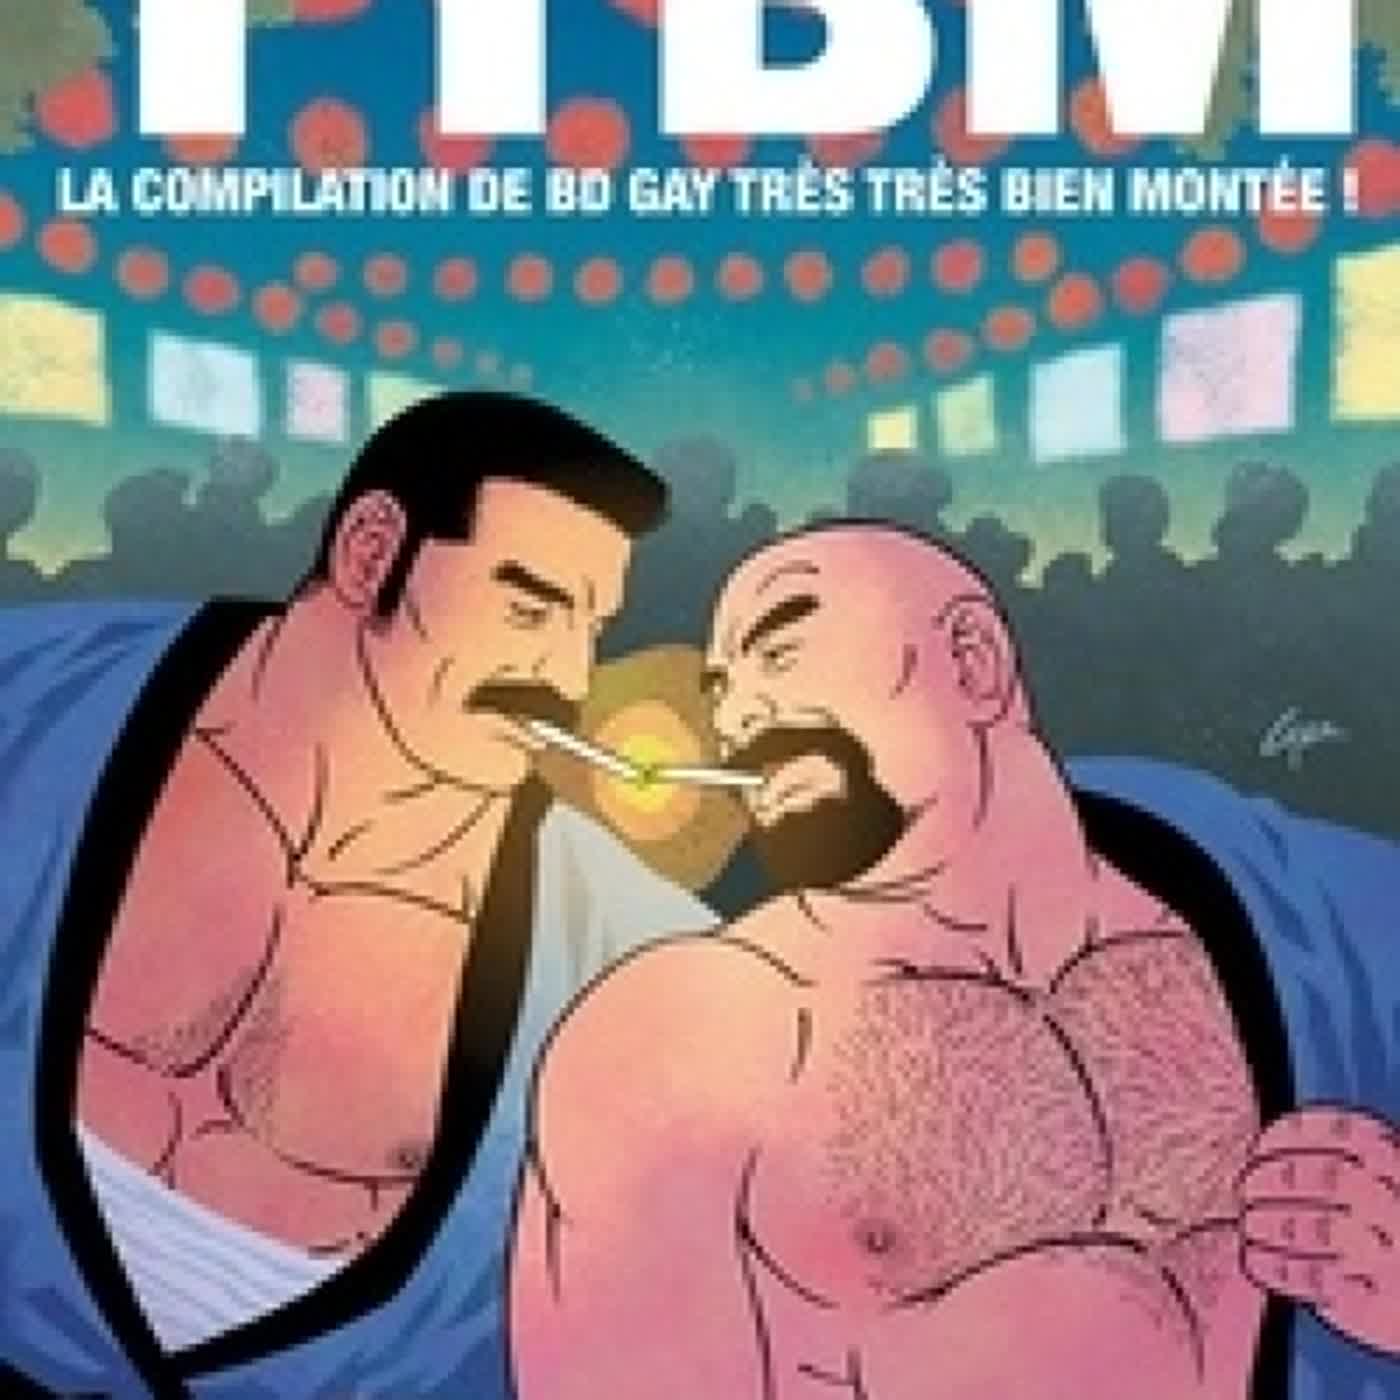 Read online: TTBM  - La compilation de BD gay très très bien montée !